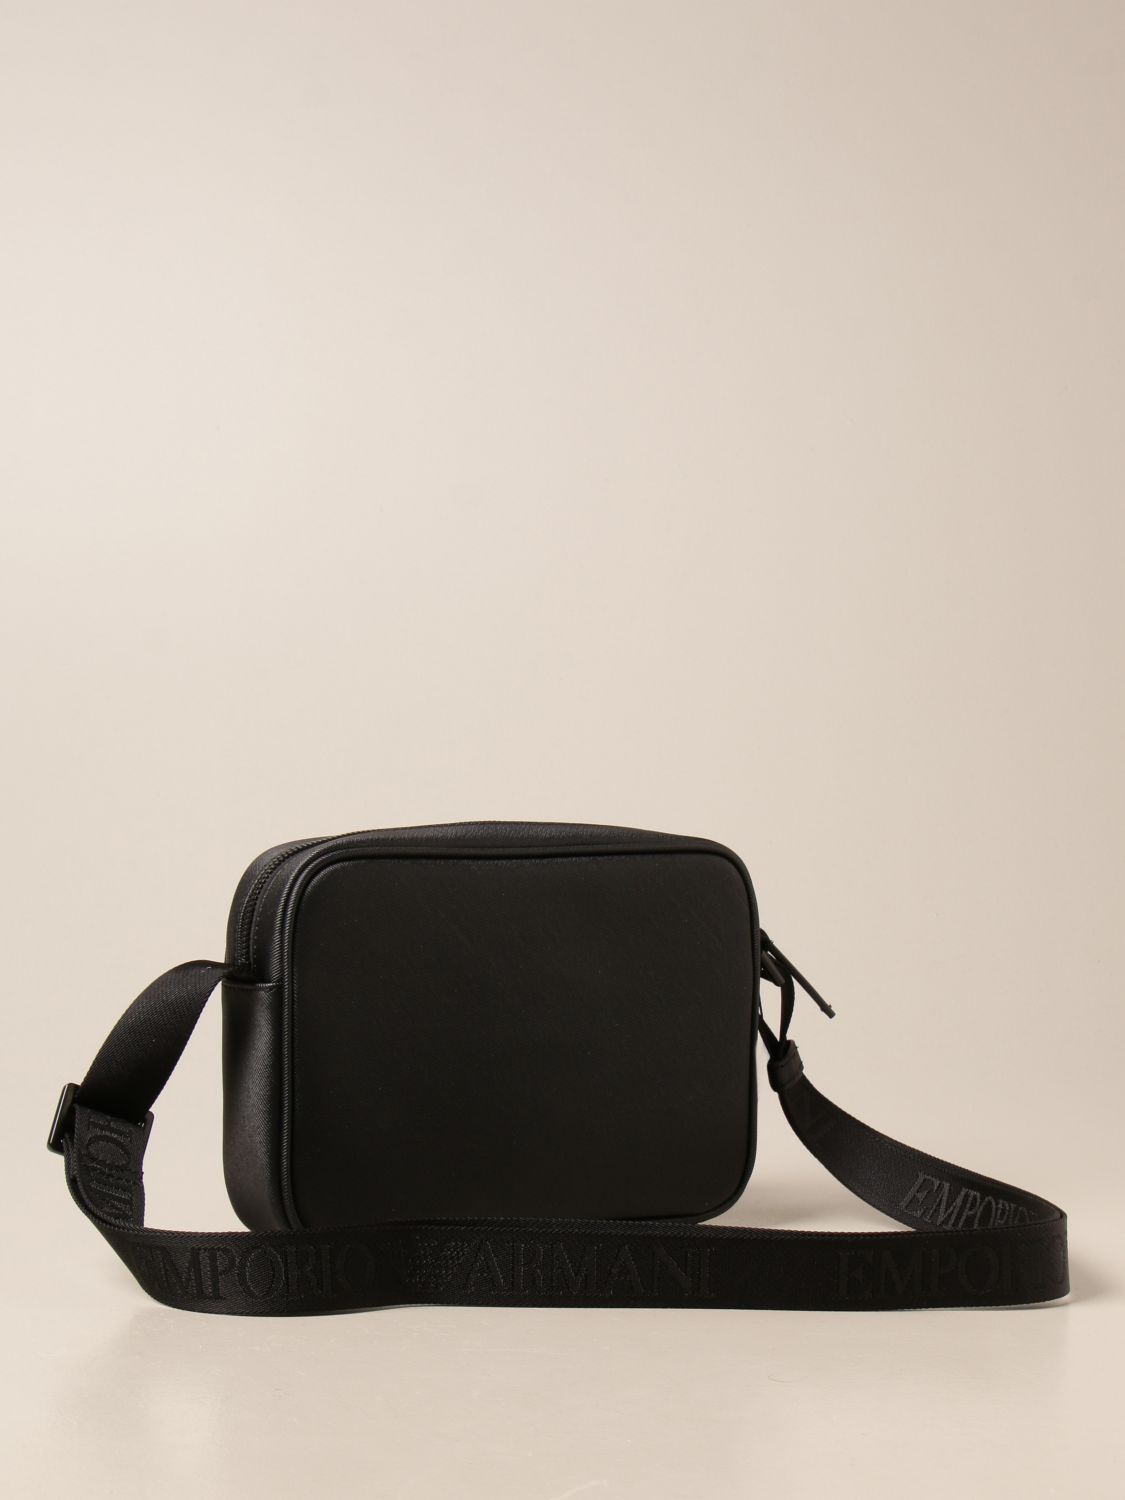 EMPORIO ARMANI: bag in synthetic leather and nylon - Black  Emporio Armani  shoulder bag Y4M234Y022V online at